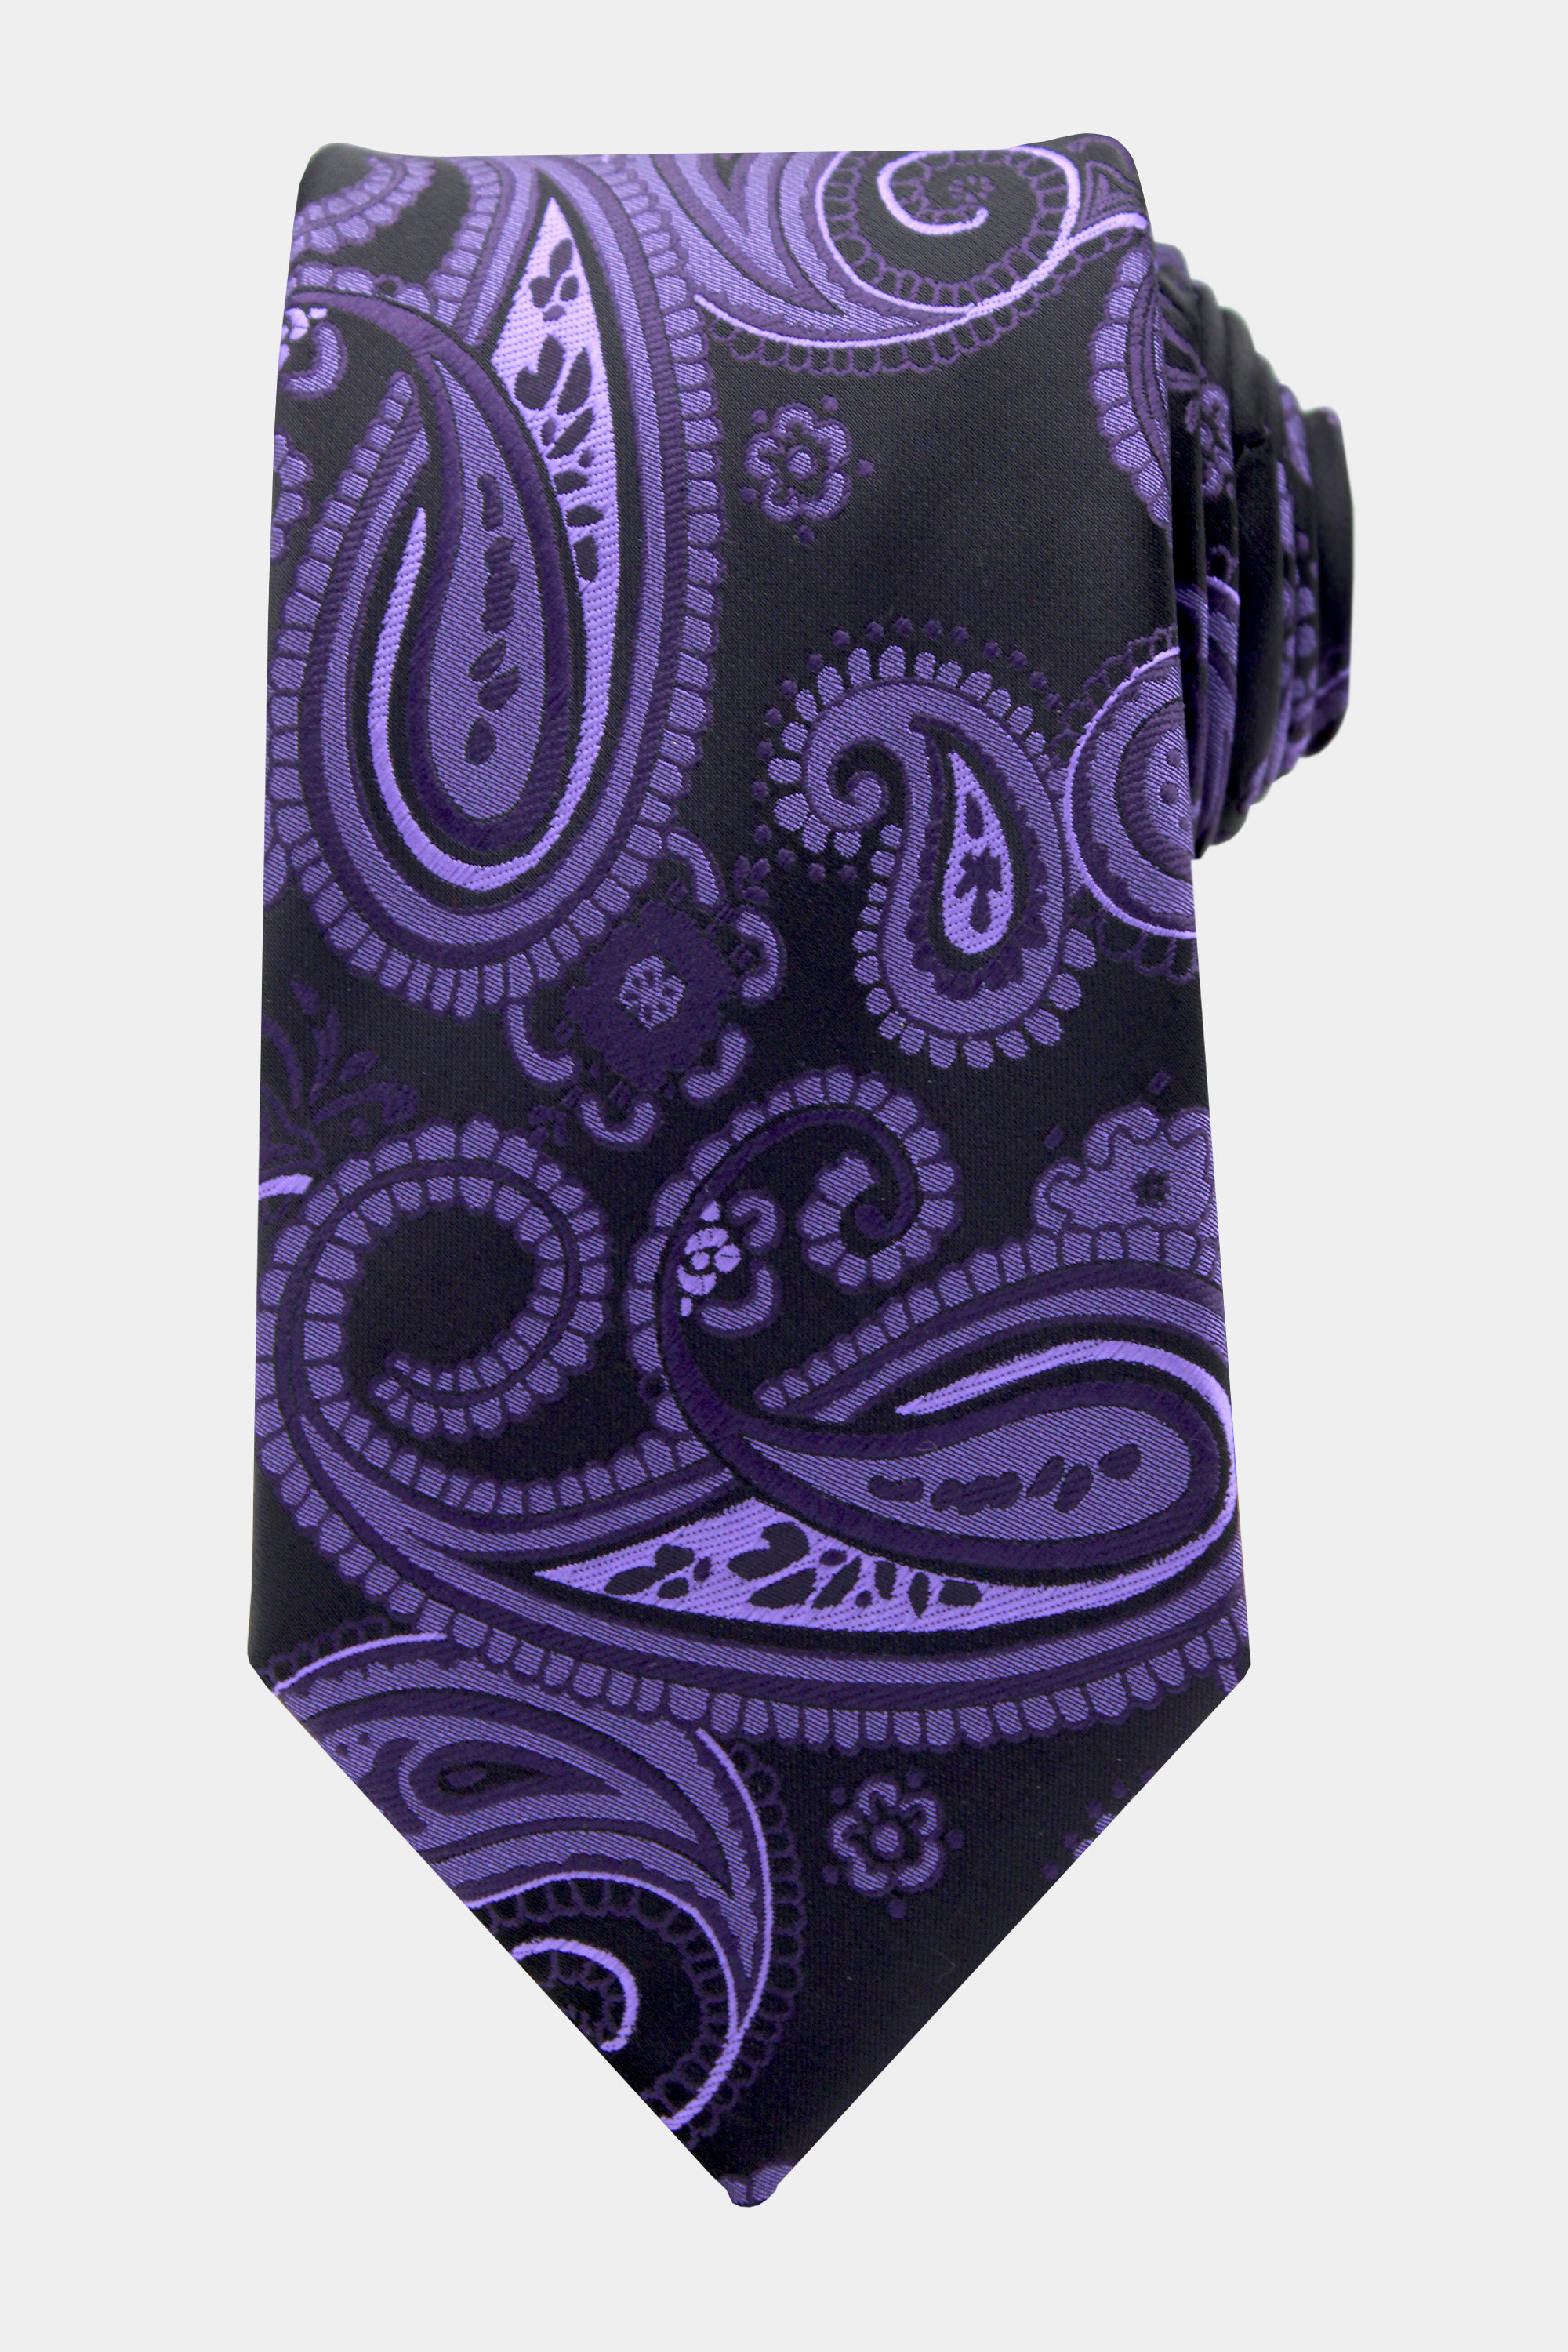 Purple-Paisley-Tie-from-Gentlemansguru.com